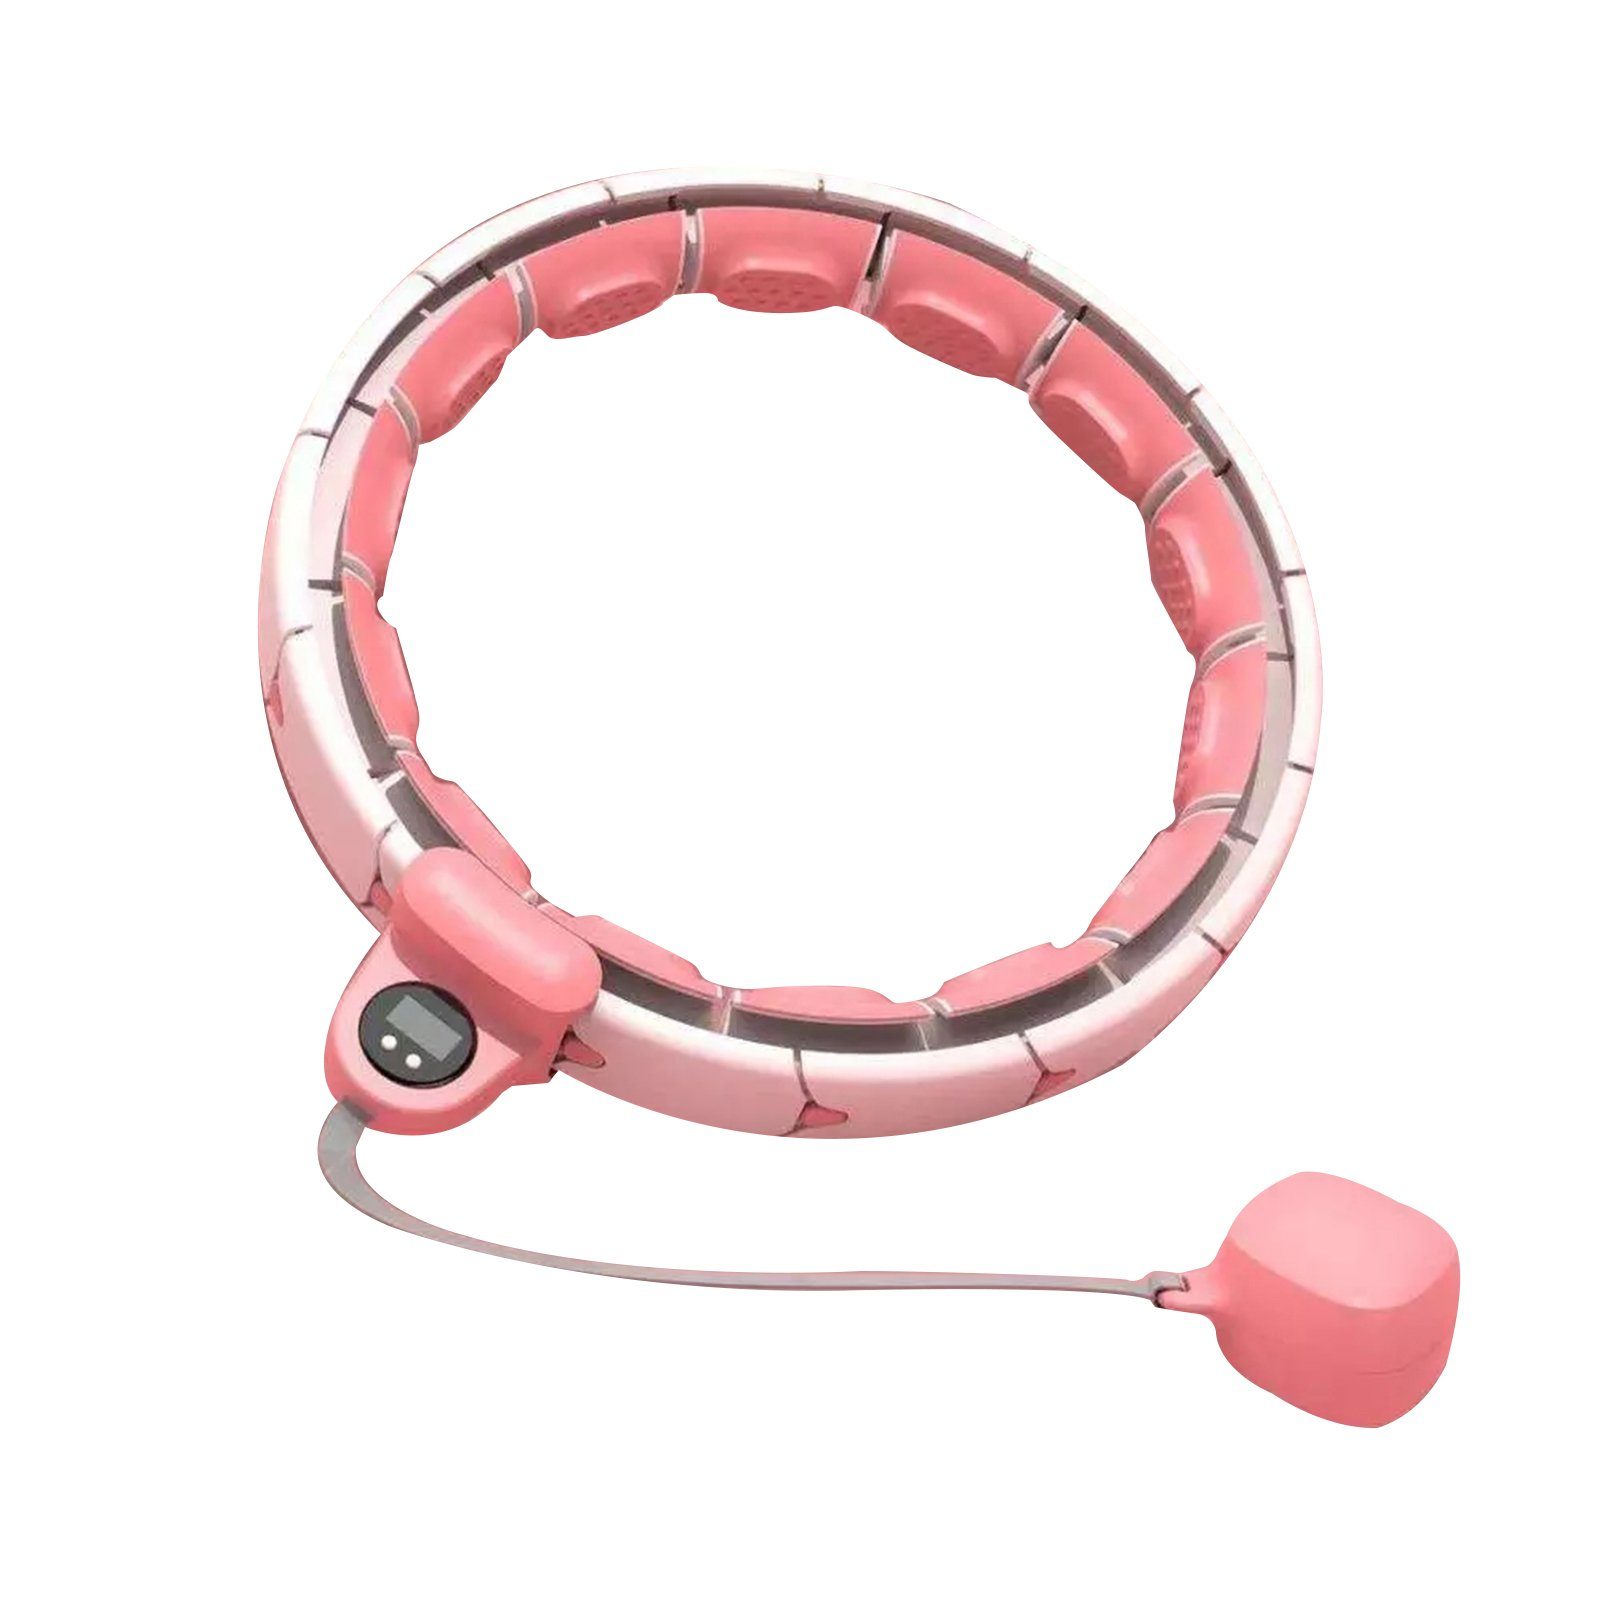 Blusmart Hula-Hoop-Reifen 2-in-1-Bauch-Fitness Für Intelligenter Fitnessring Erwachsene, Der pink